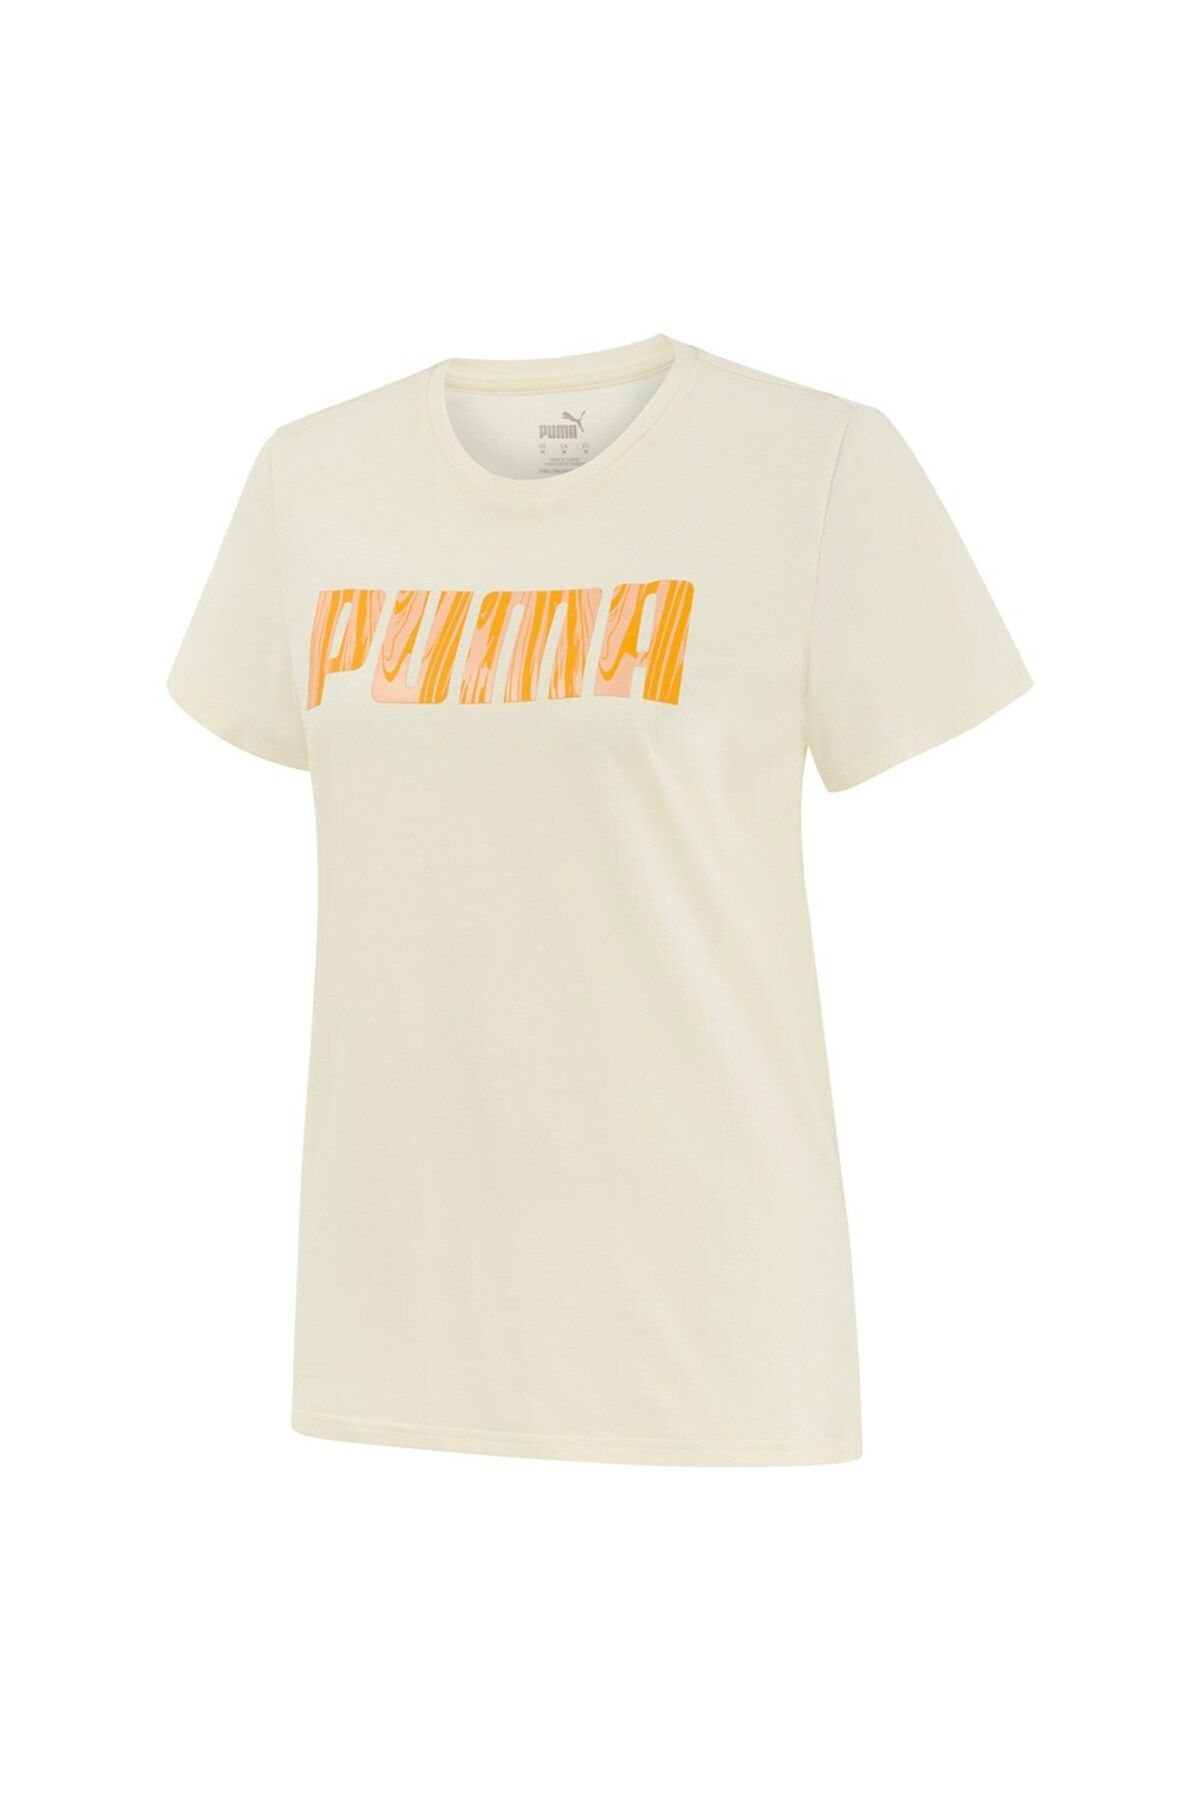 Puma Blank Base Women S Tee Kadın T-shirt